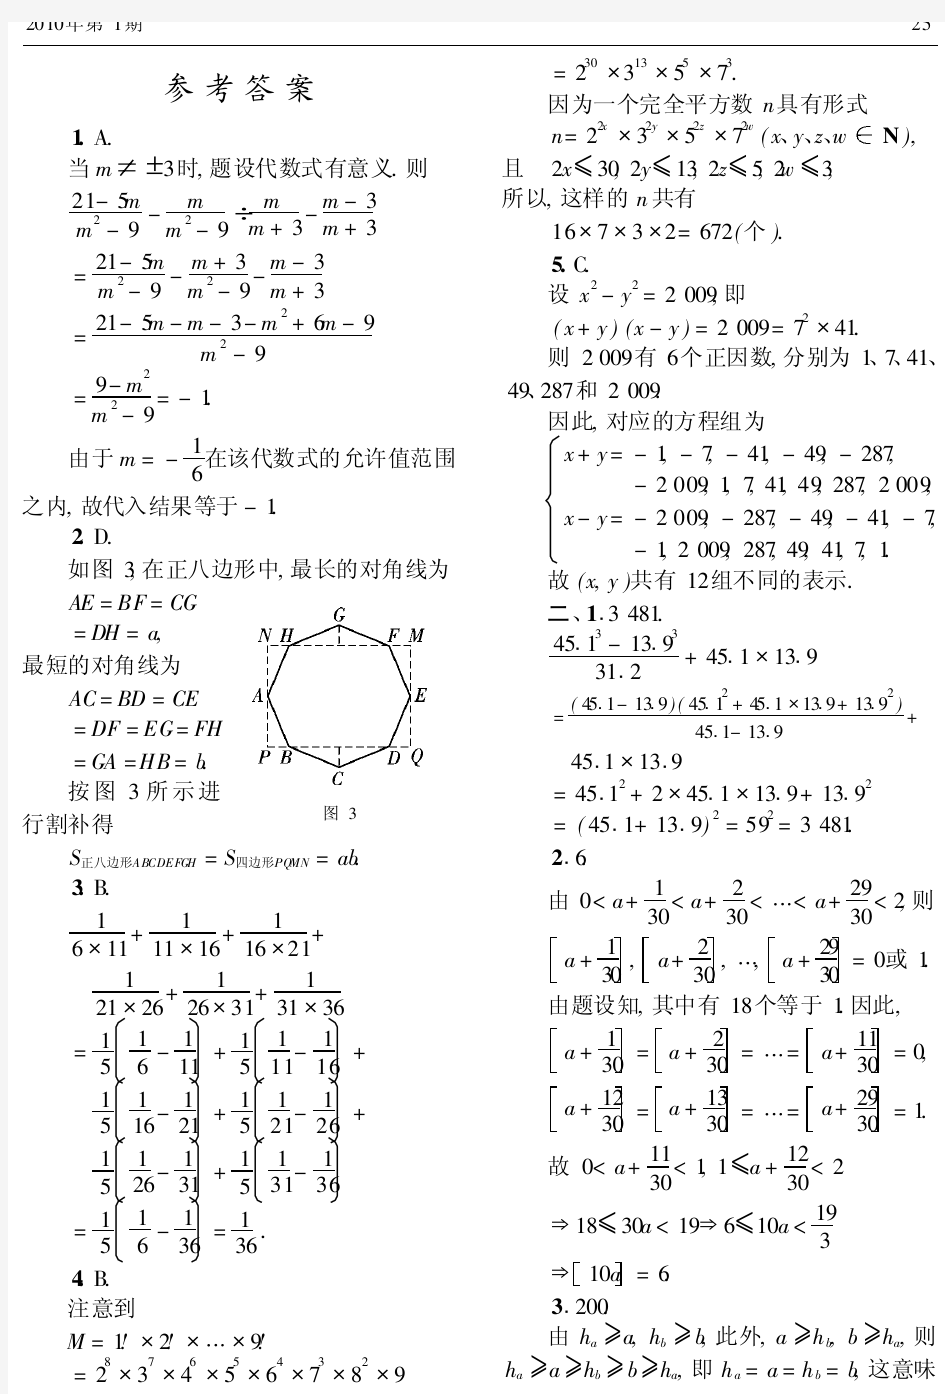 2009年北京市中学生数学竞赛_初二_